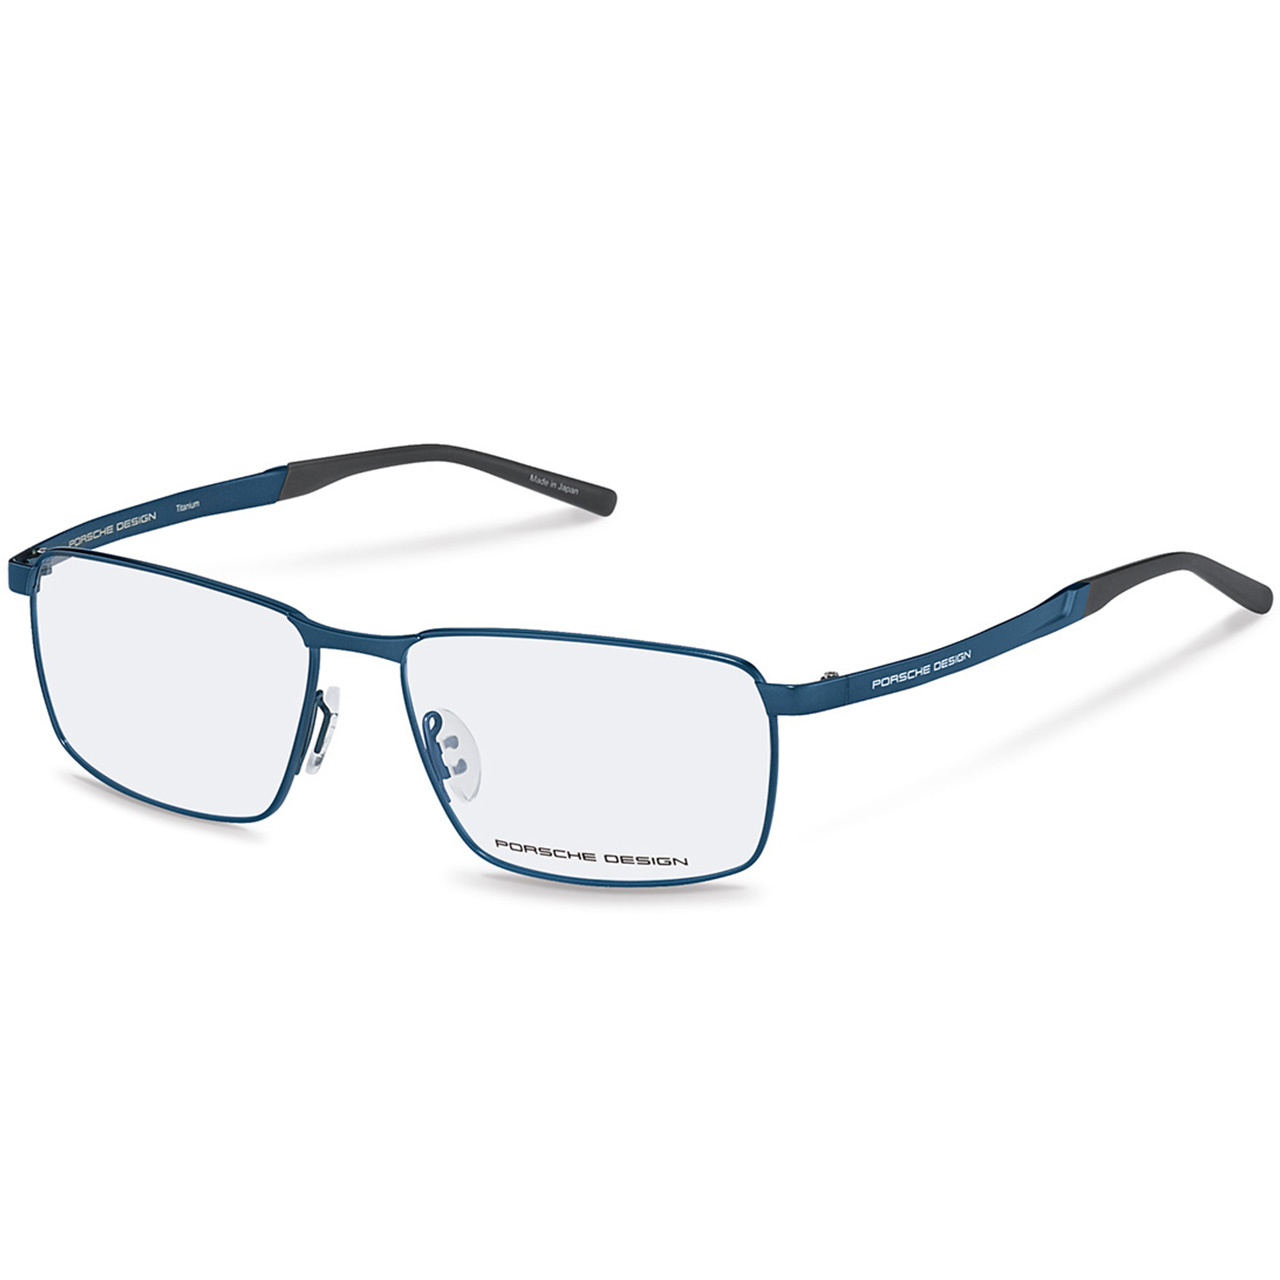 Correction Frames P´8337 - Titanium-Frame Glasses - High-Quality 